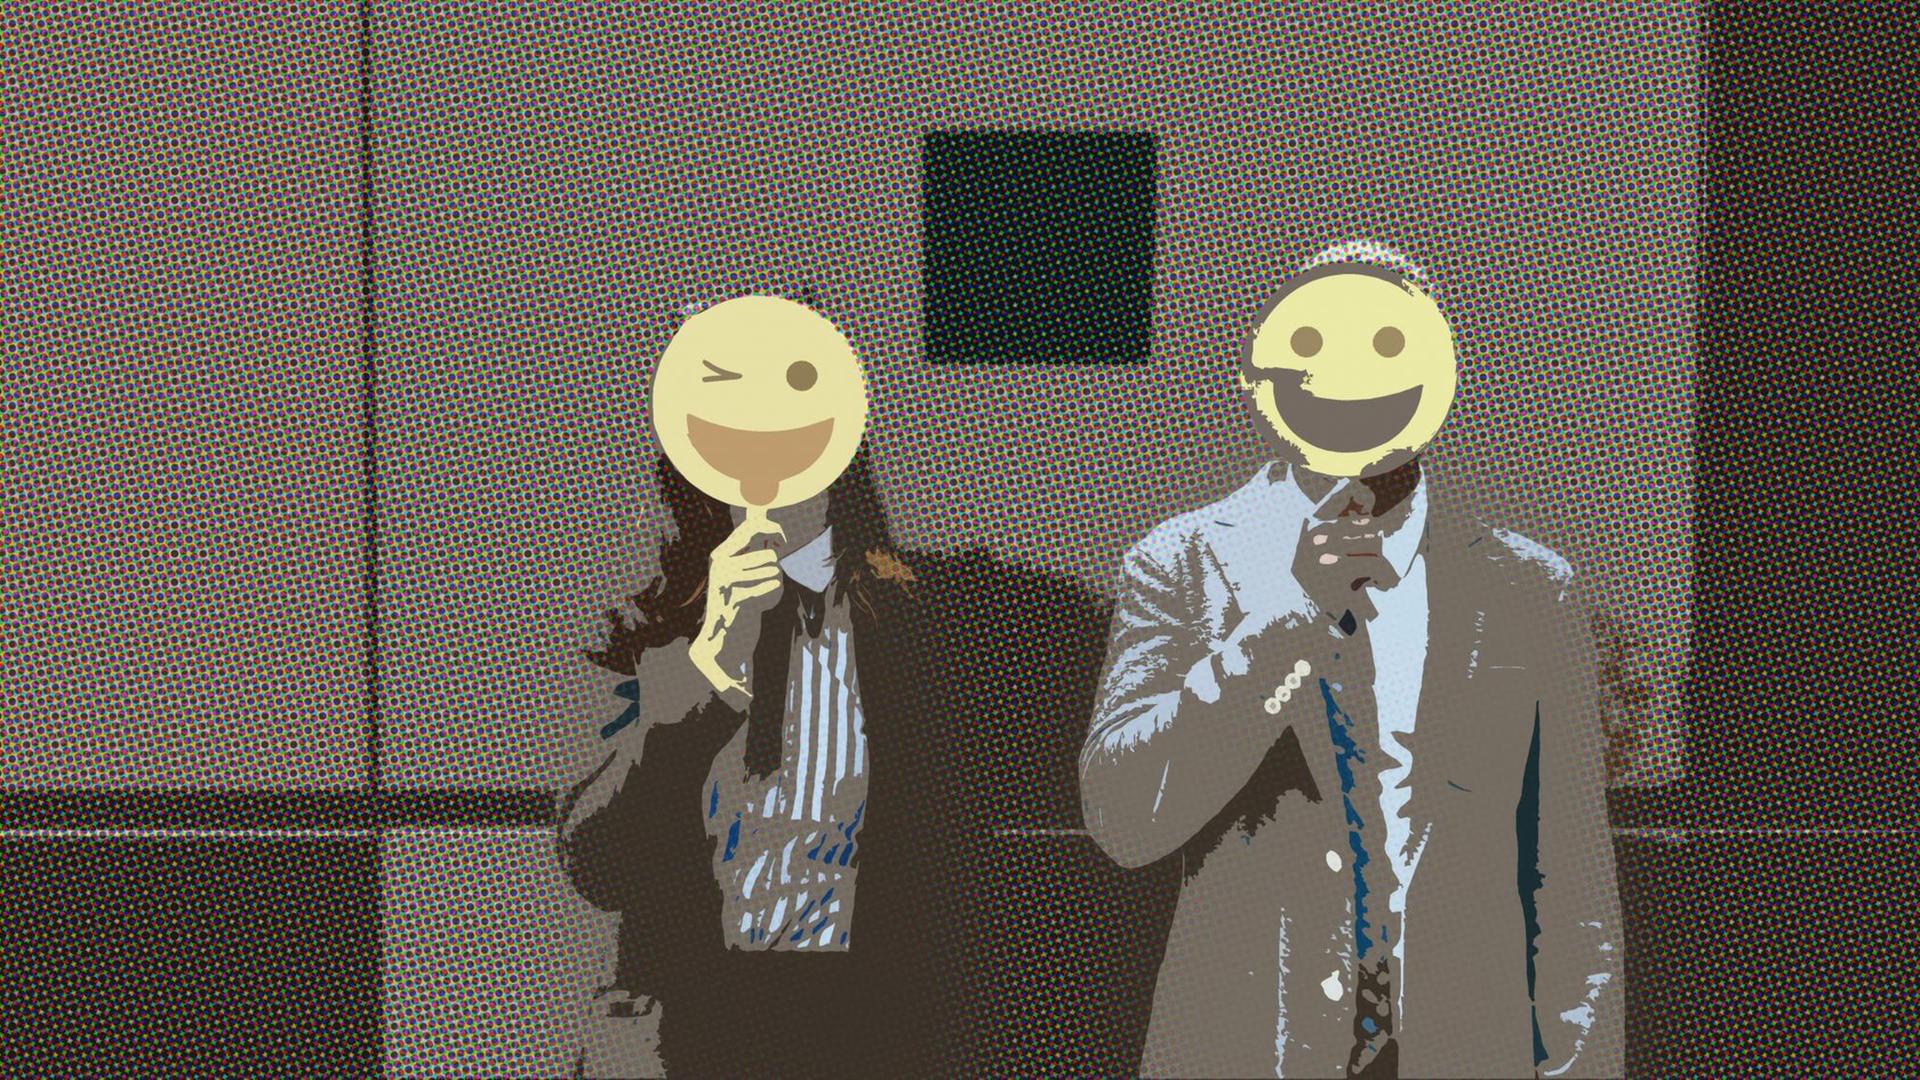 Zwei Menschen mit Smiley-Masken vor dem Gesicht. Comicartig verfremdet.